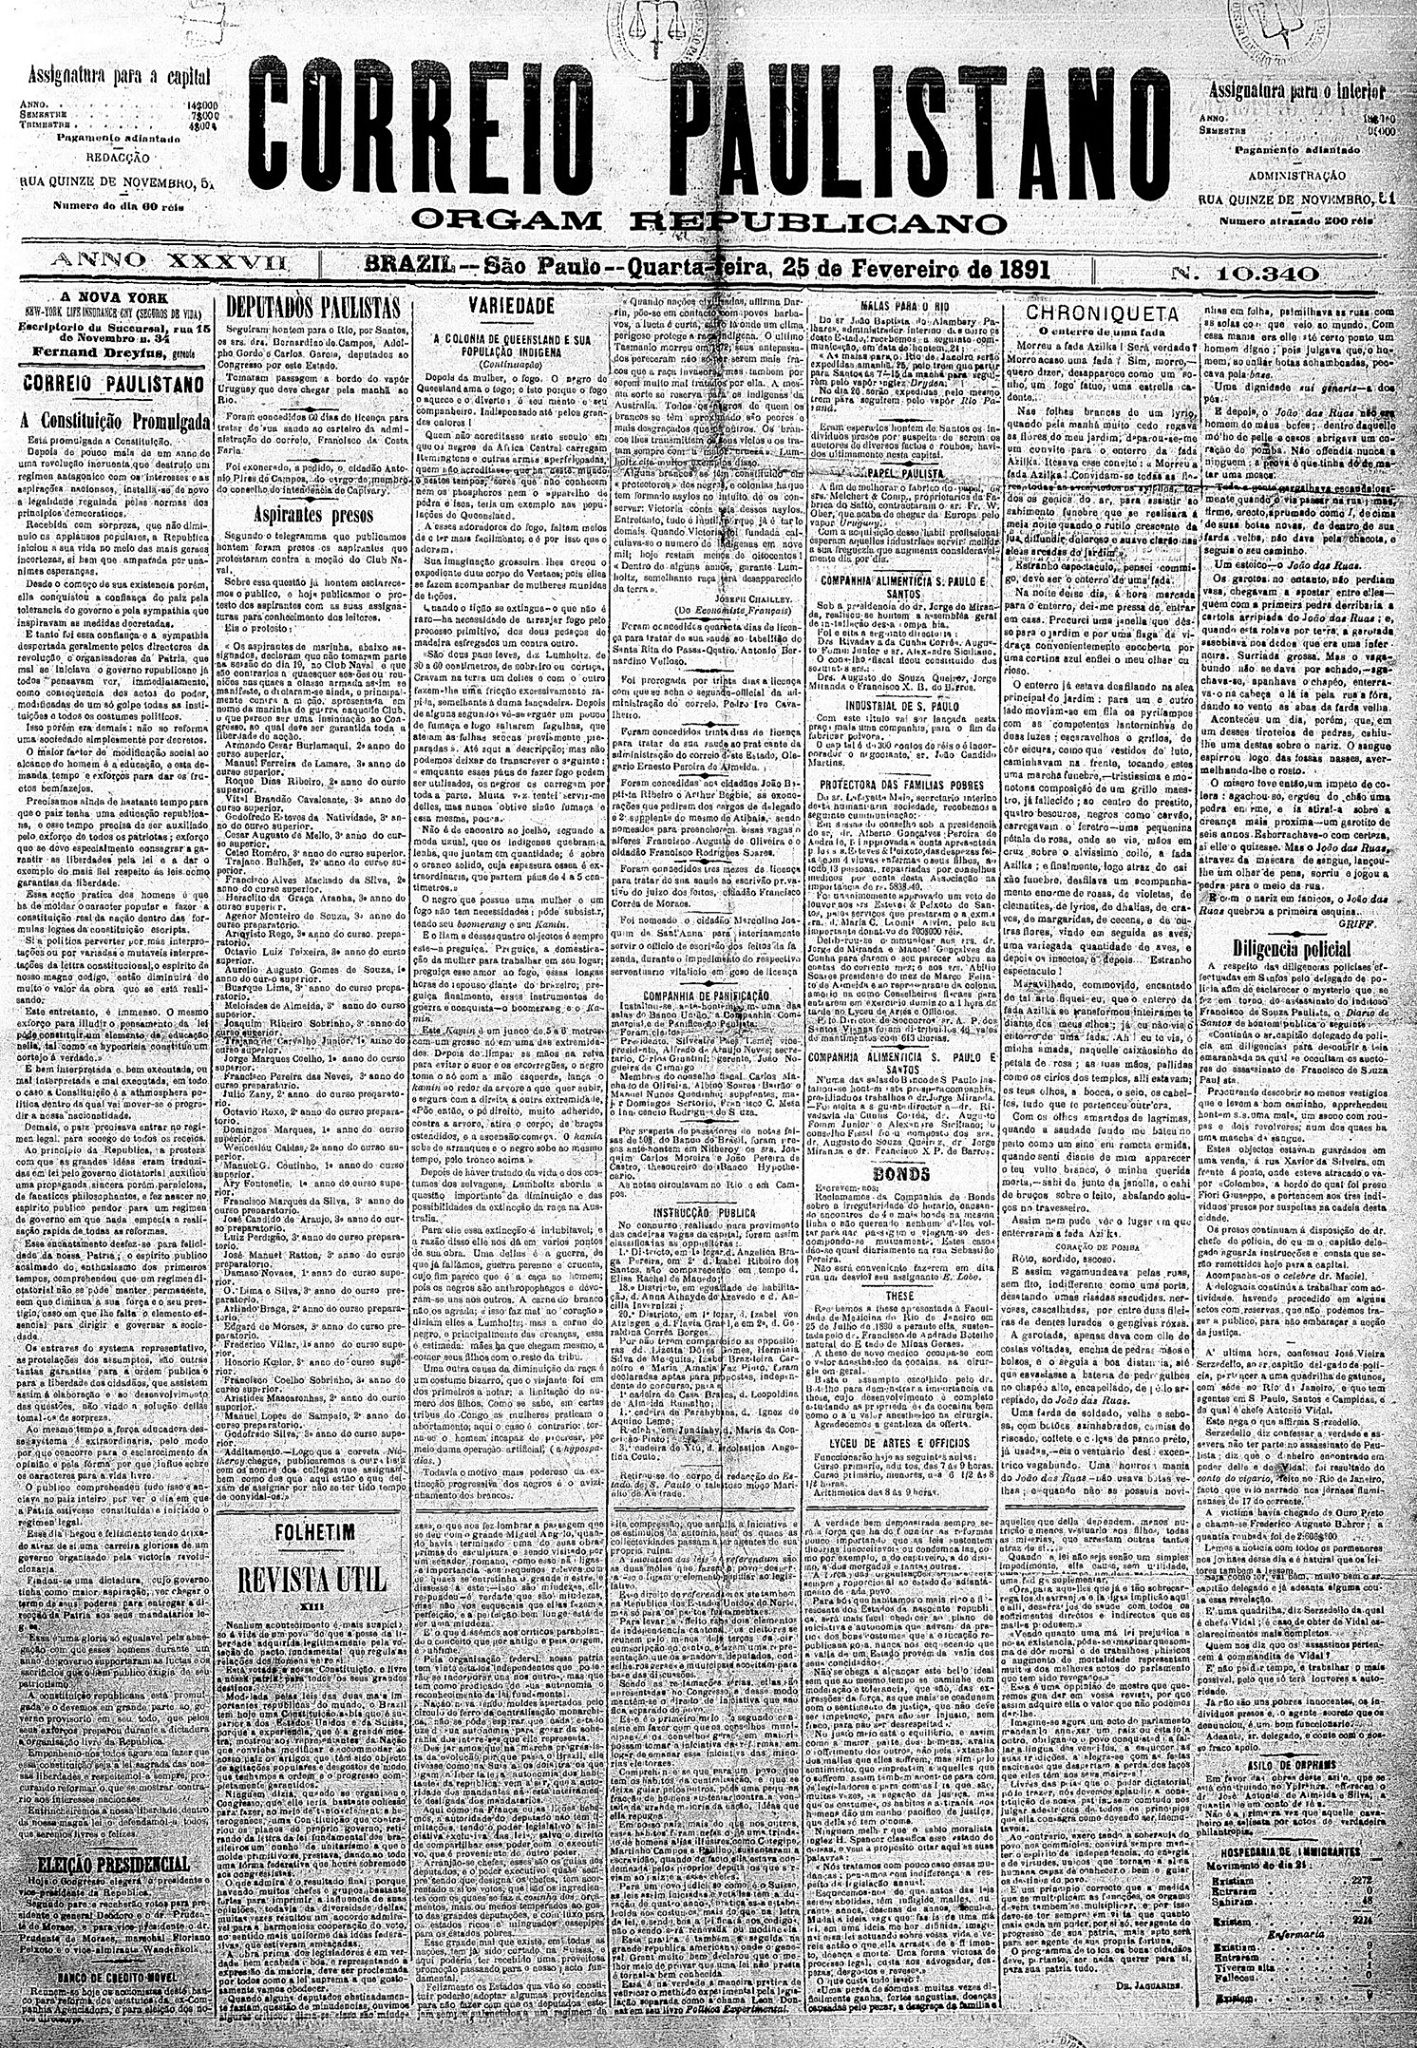 Edições antigas do Jornal Correio Paulistano serviram de fonte para a investigação